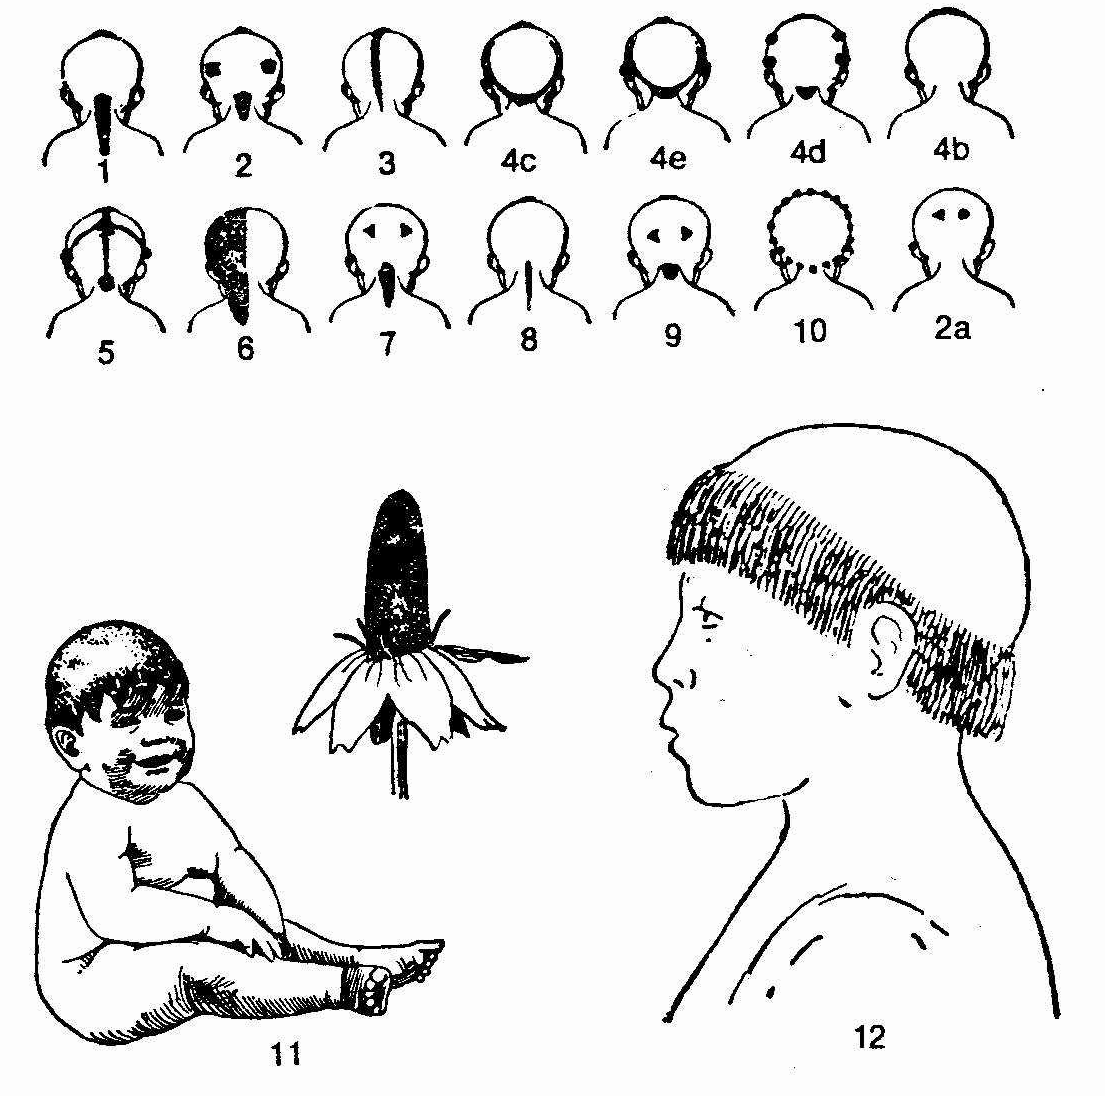 La Flasche, The OsageTribe(1928)におけるクラン親族に対応するトーテム動植物に対応する子供のヘアスタイル